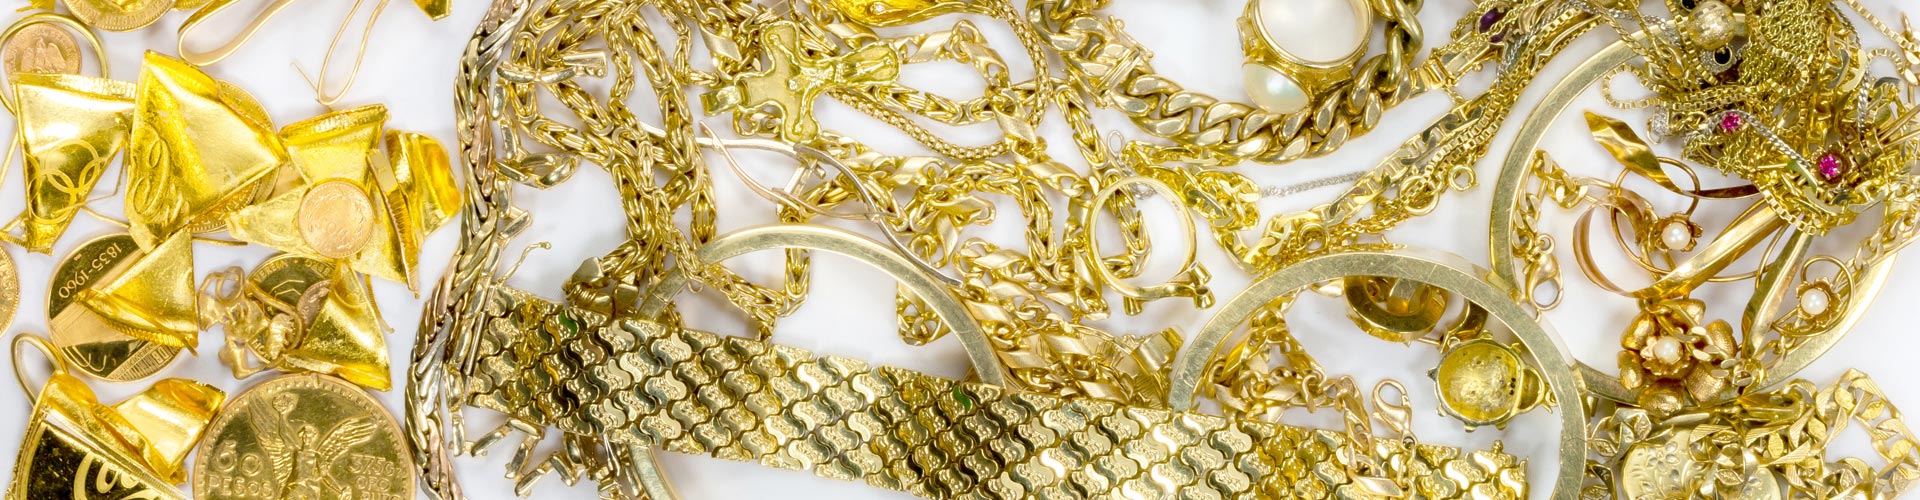 Goldketten, Goldarmbänder und Ringe aus Gold mit Edelsteinen